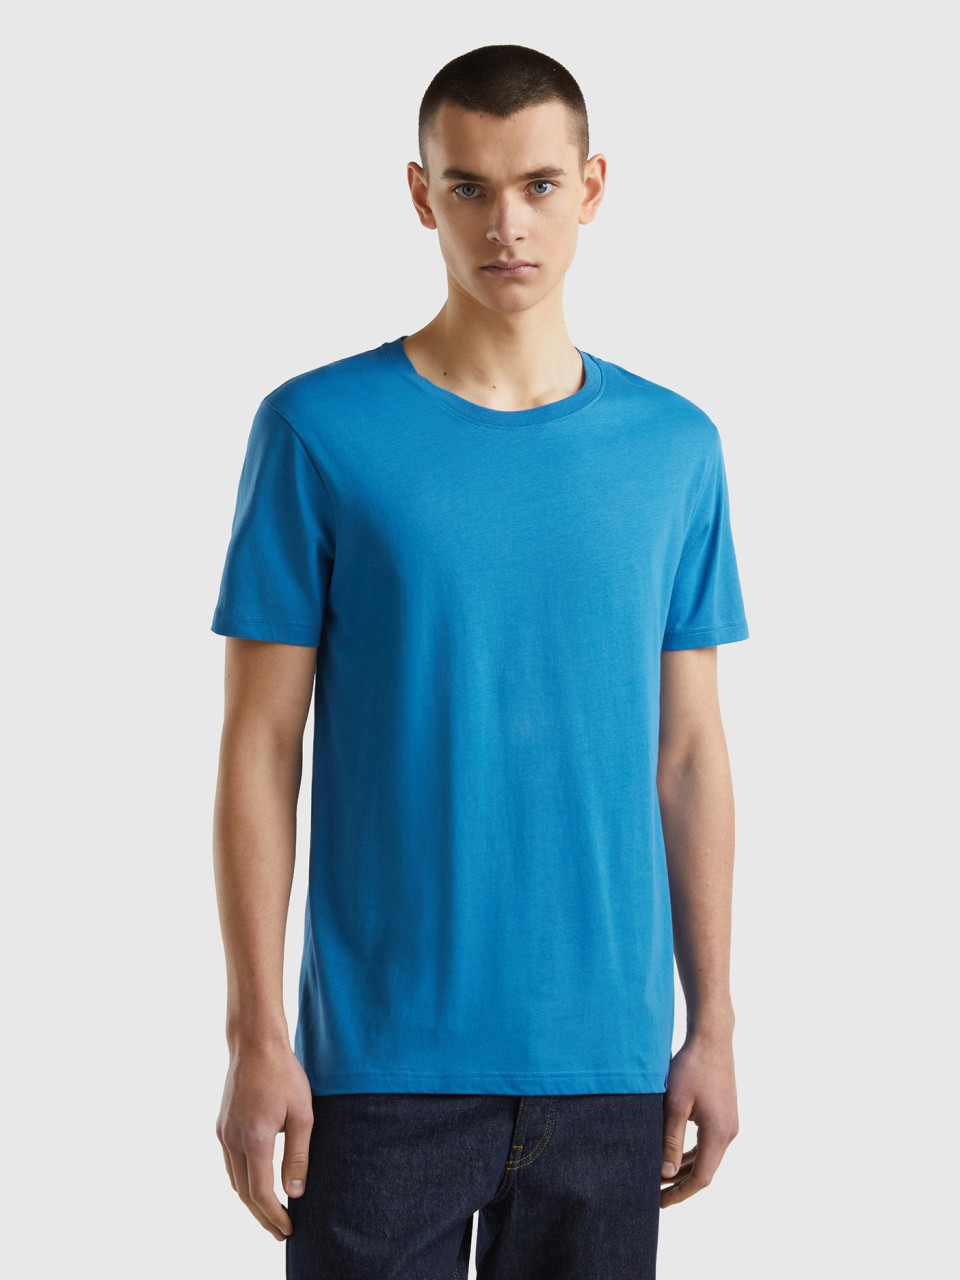 Benetton, Blue T-shirt, Blue, Men